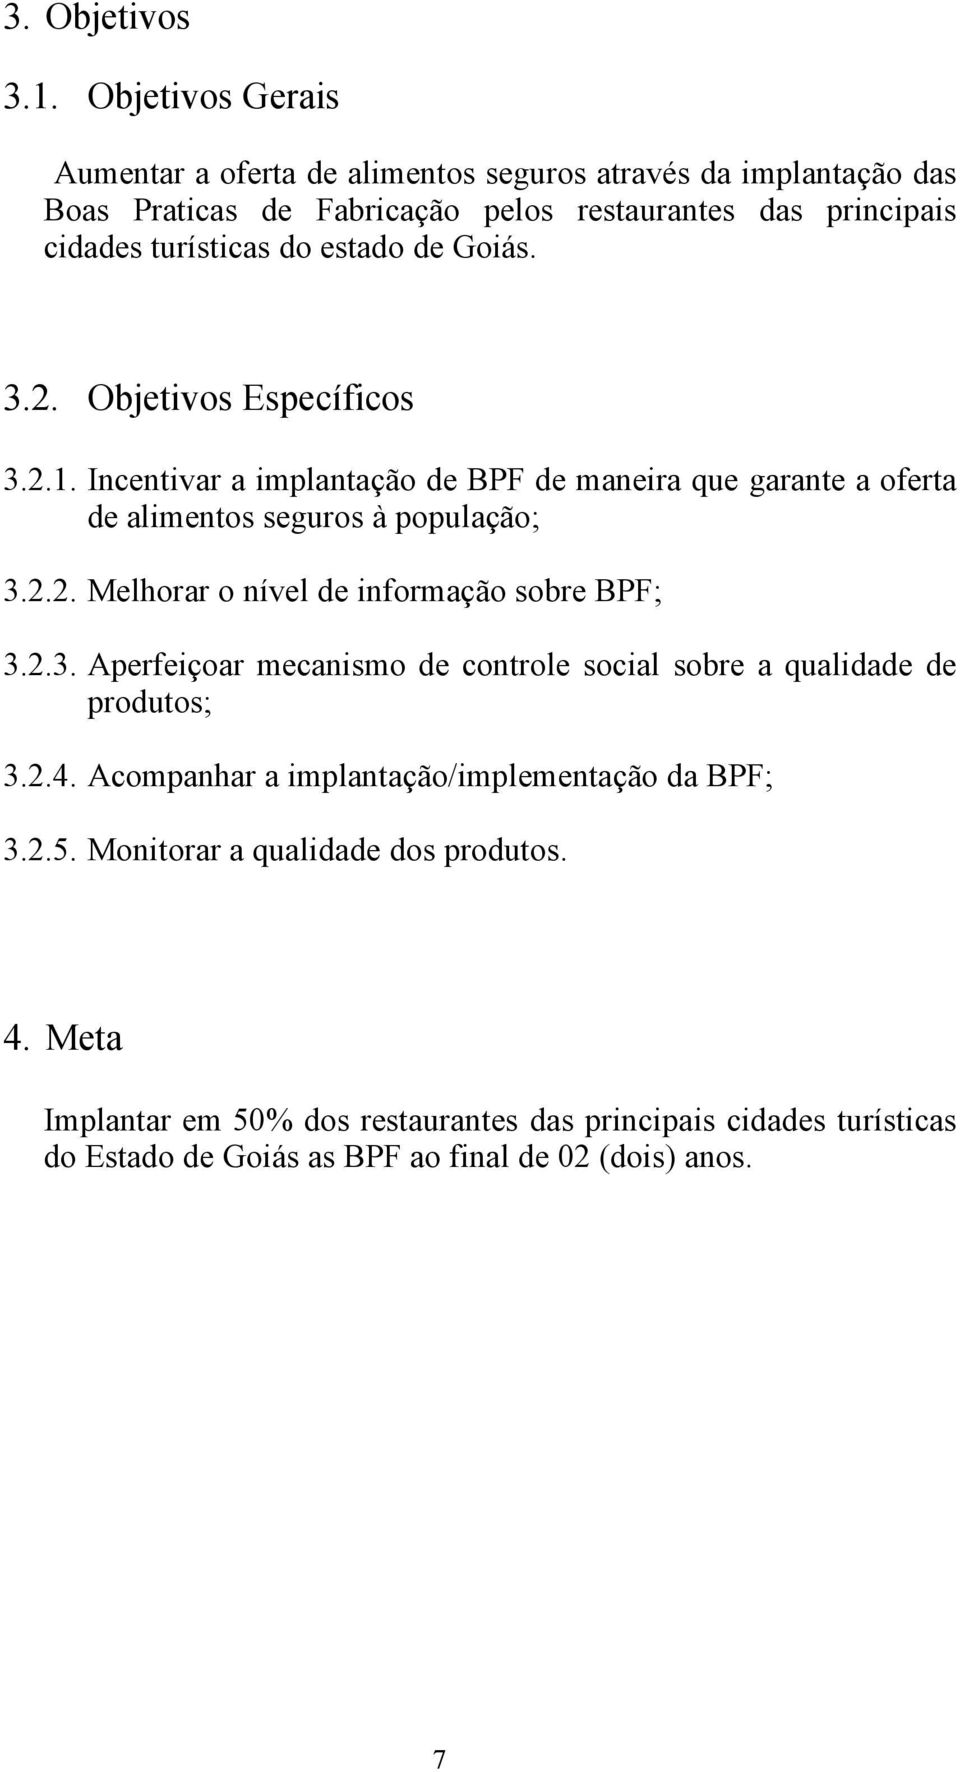 estado de Goiás. 3.2. Objetivos Específicos 3.2.1. Incentivar a implantação de BPF de maneira que garante a oferta de alimentos seguros à população; 3.2.2. Melhorar o nível de informação sobre BPF; 3.